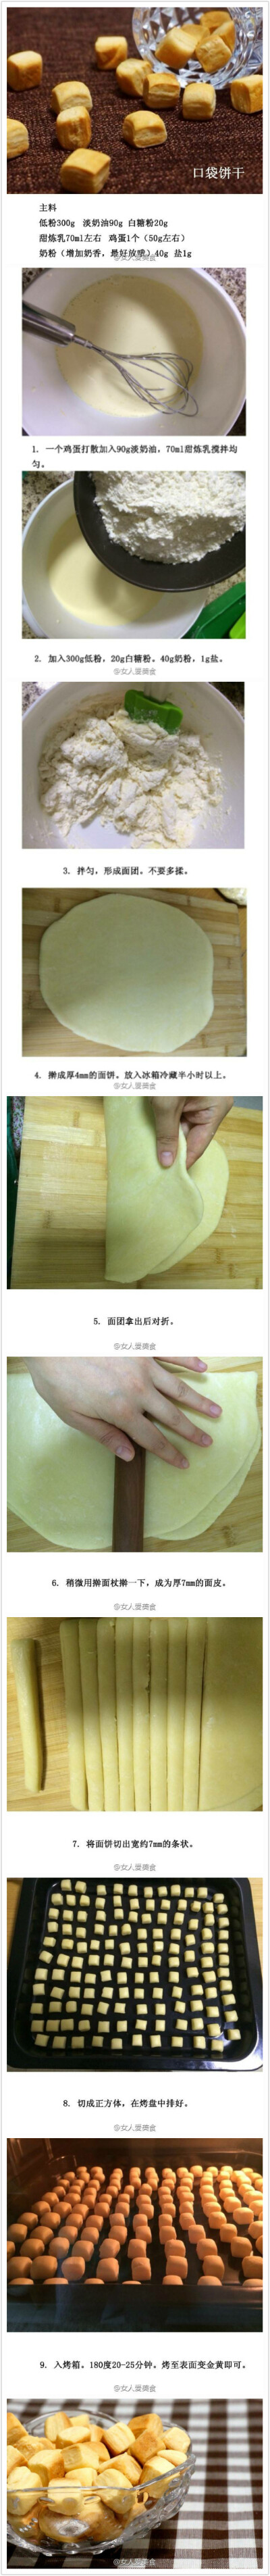 美食甜点饼干口袋饼干方便易带 by柠檬酸诺v